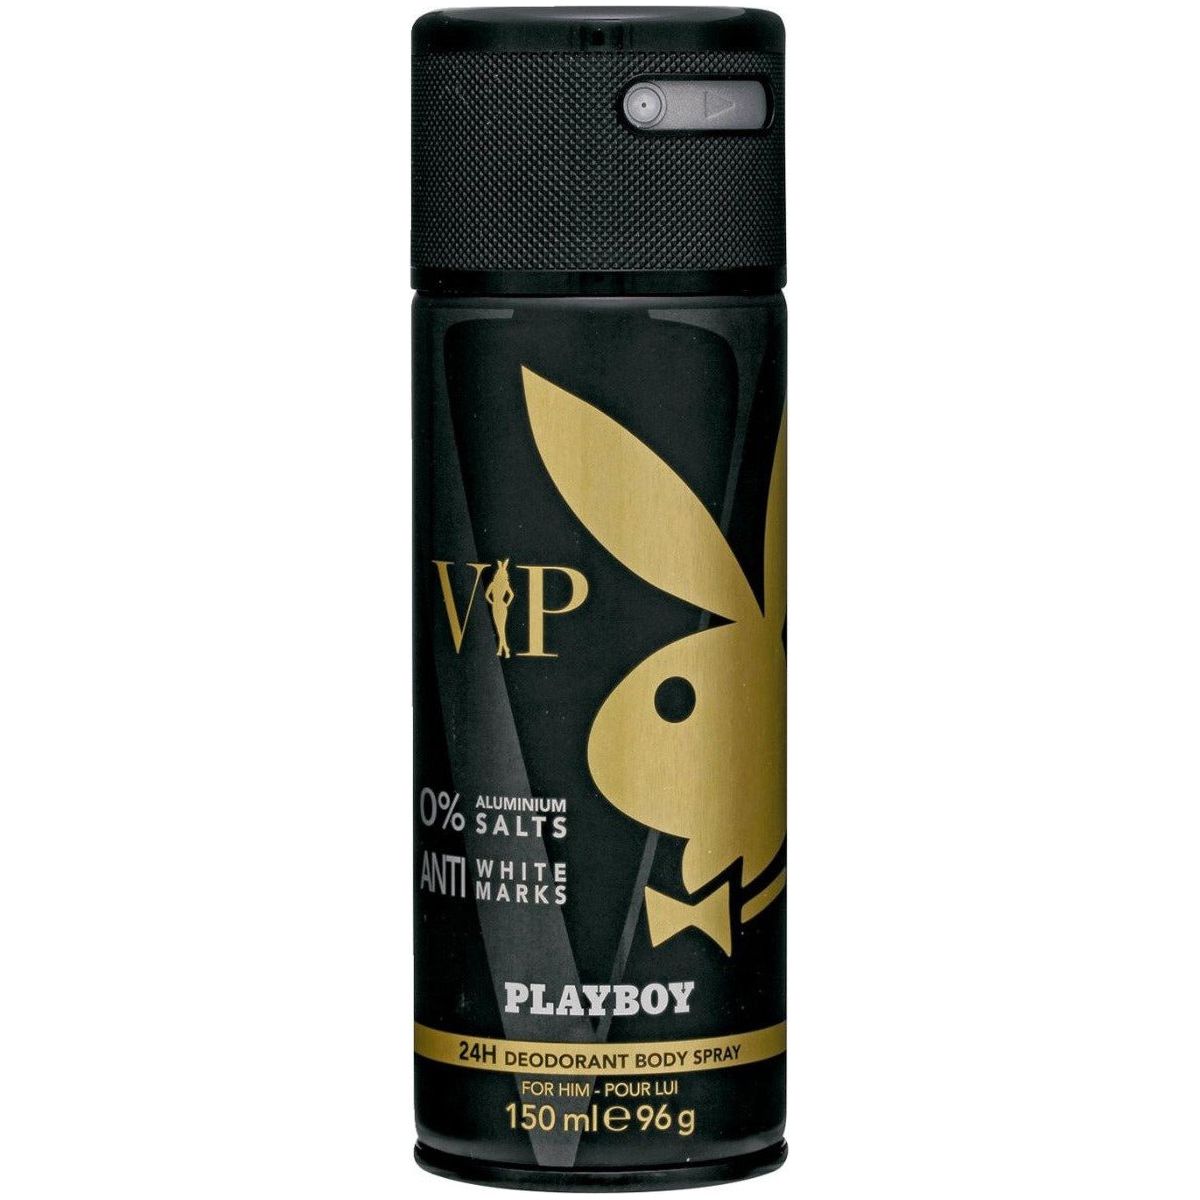 Playboy (anti white marks) by Playboy Deodorant Body Spray men 5.0